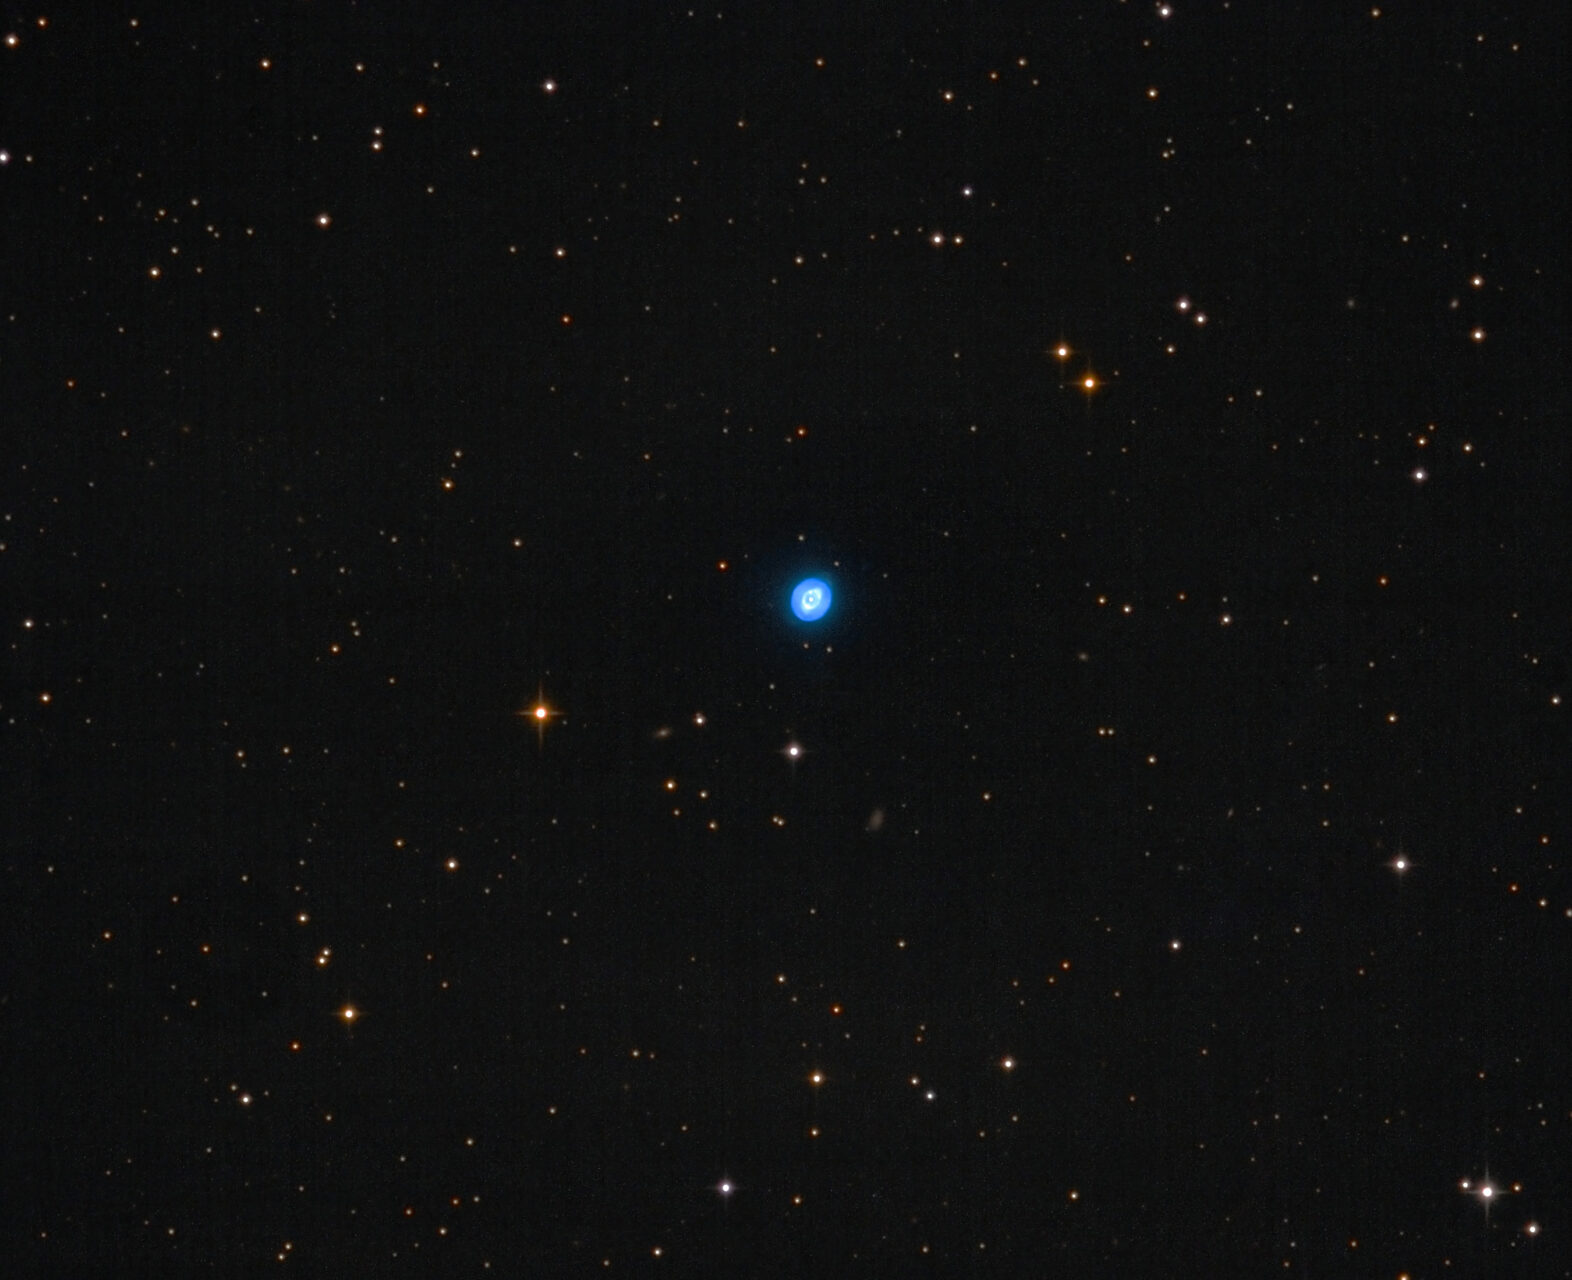 NGC 3242